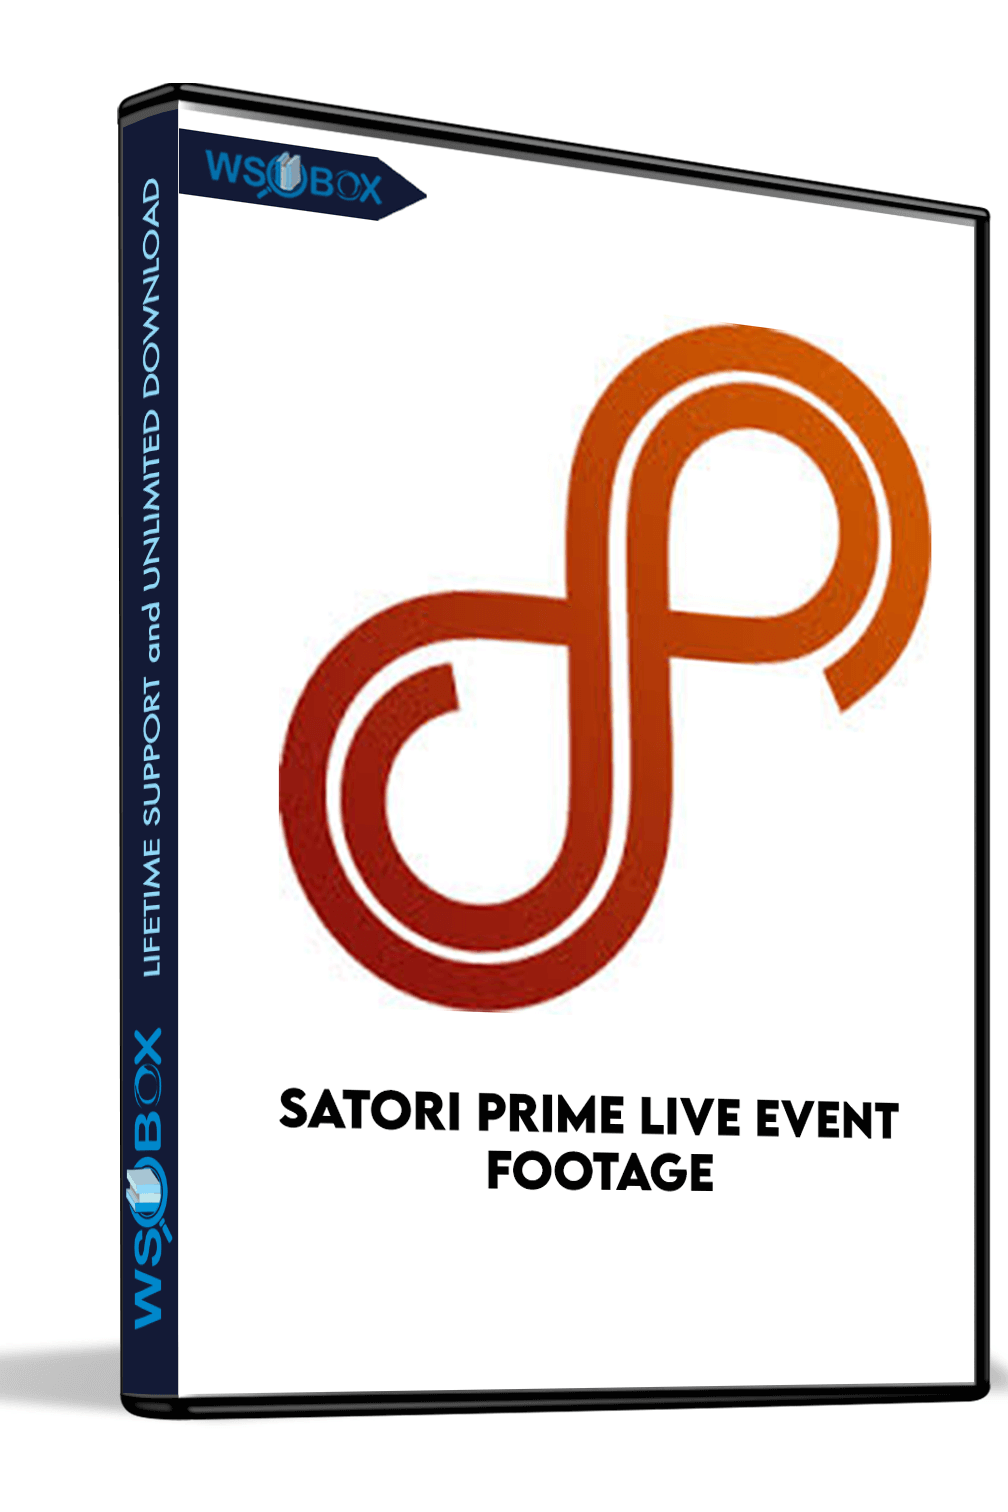 Satori Prime Live Event Footage